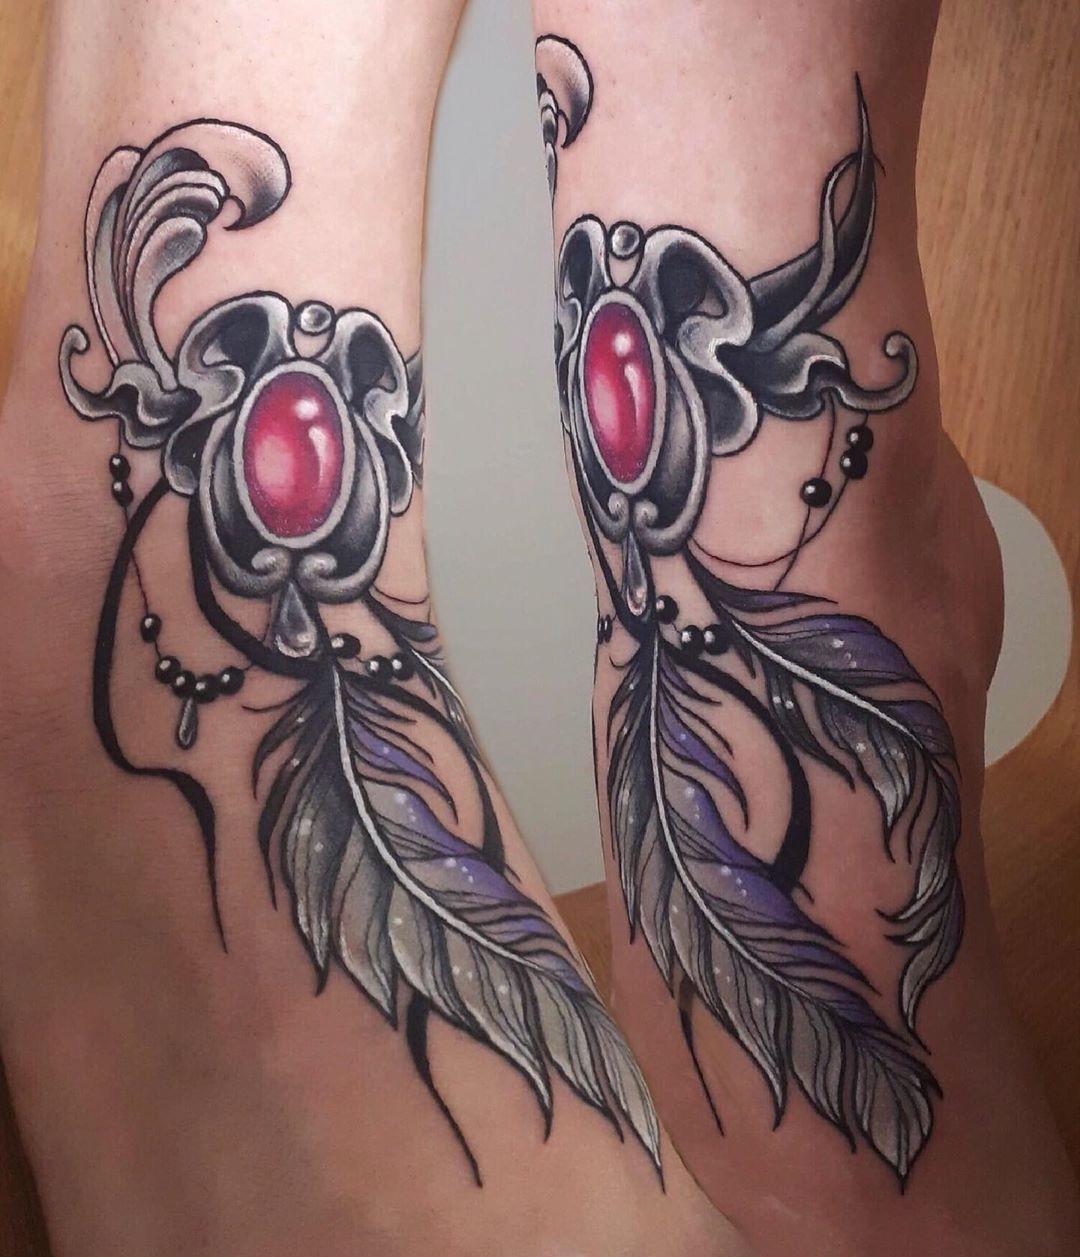 Inksearch tattoo Natalia Rałowiec - Nat Moonchild